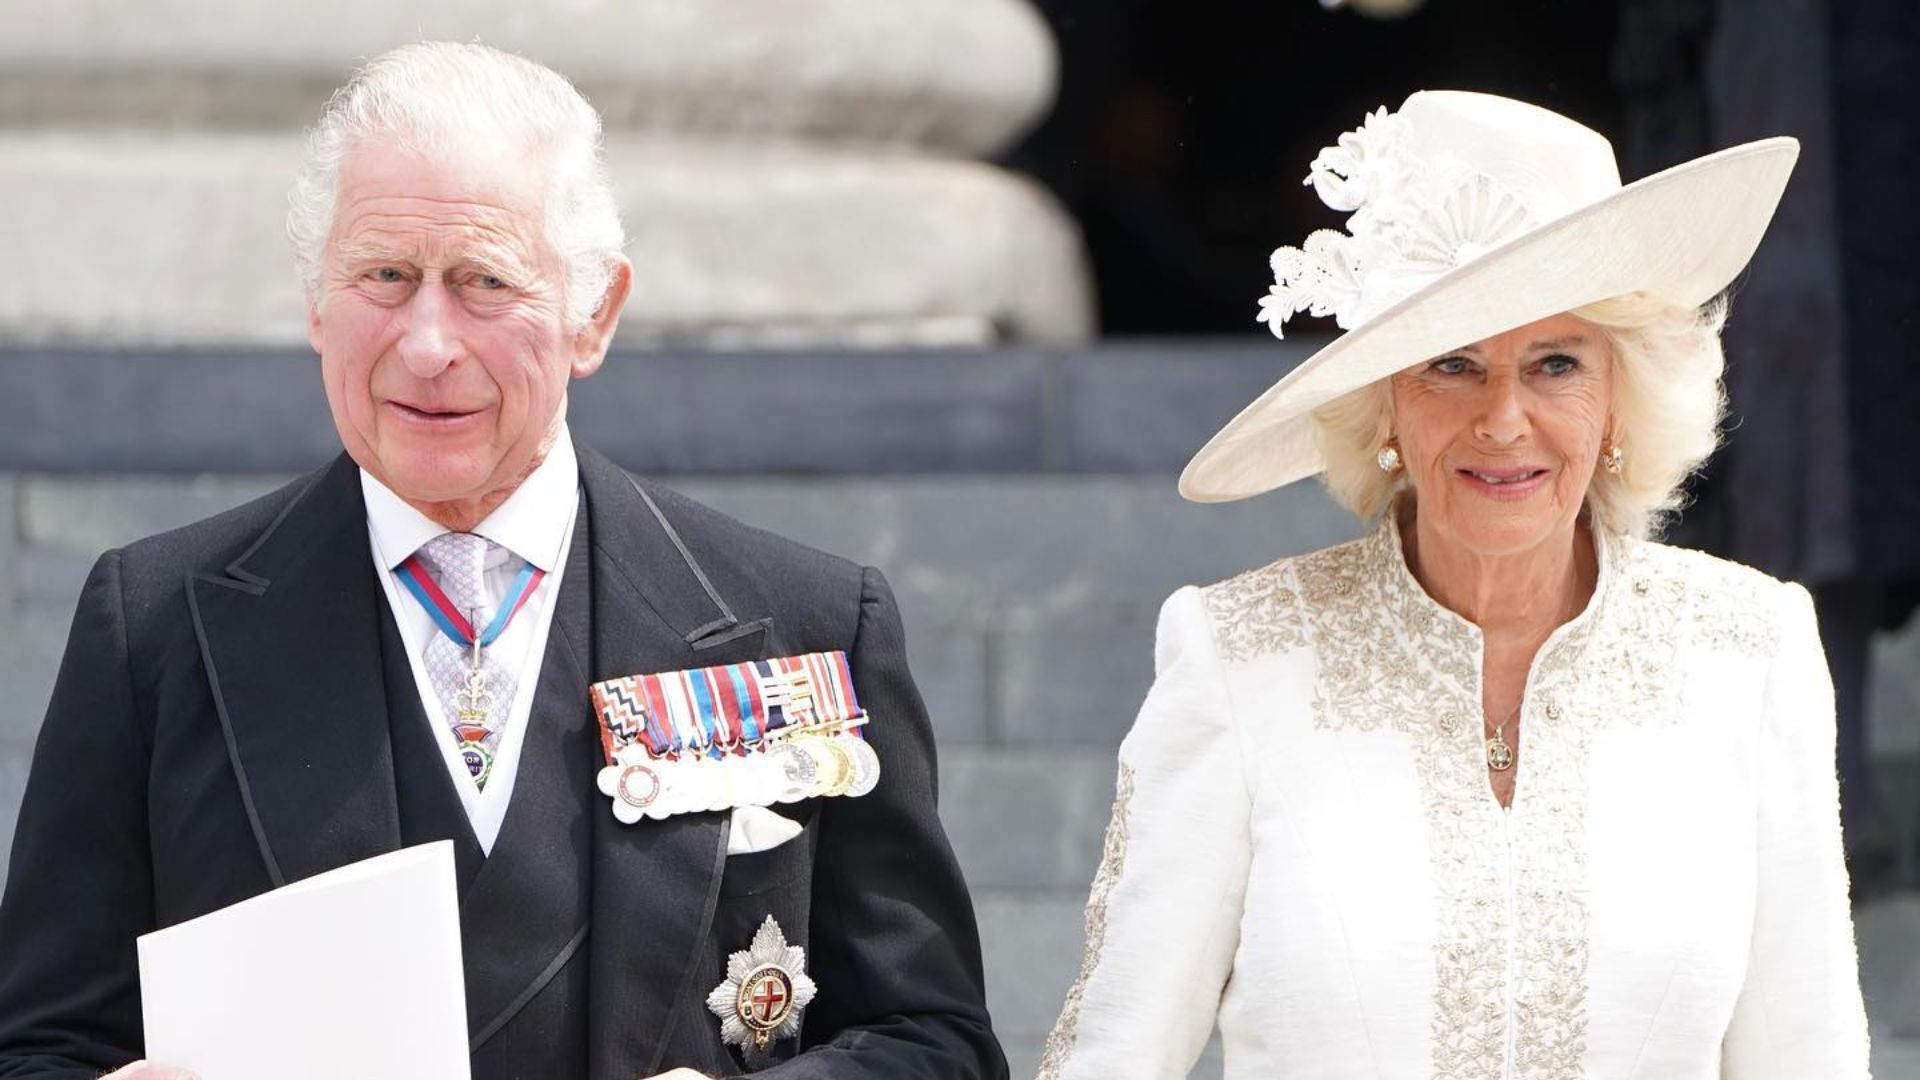 Royal family nicknames: Prince Charles and Camilla